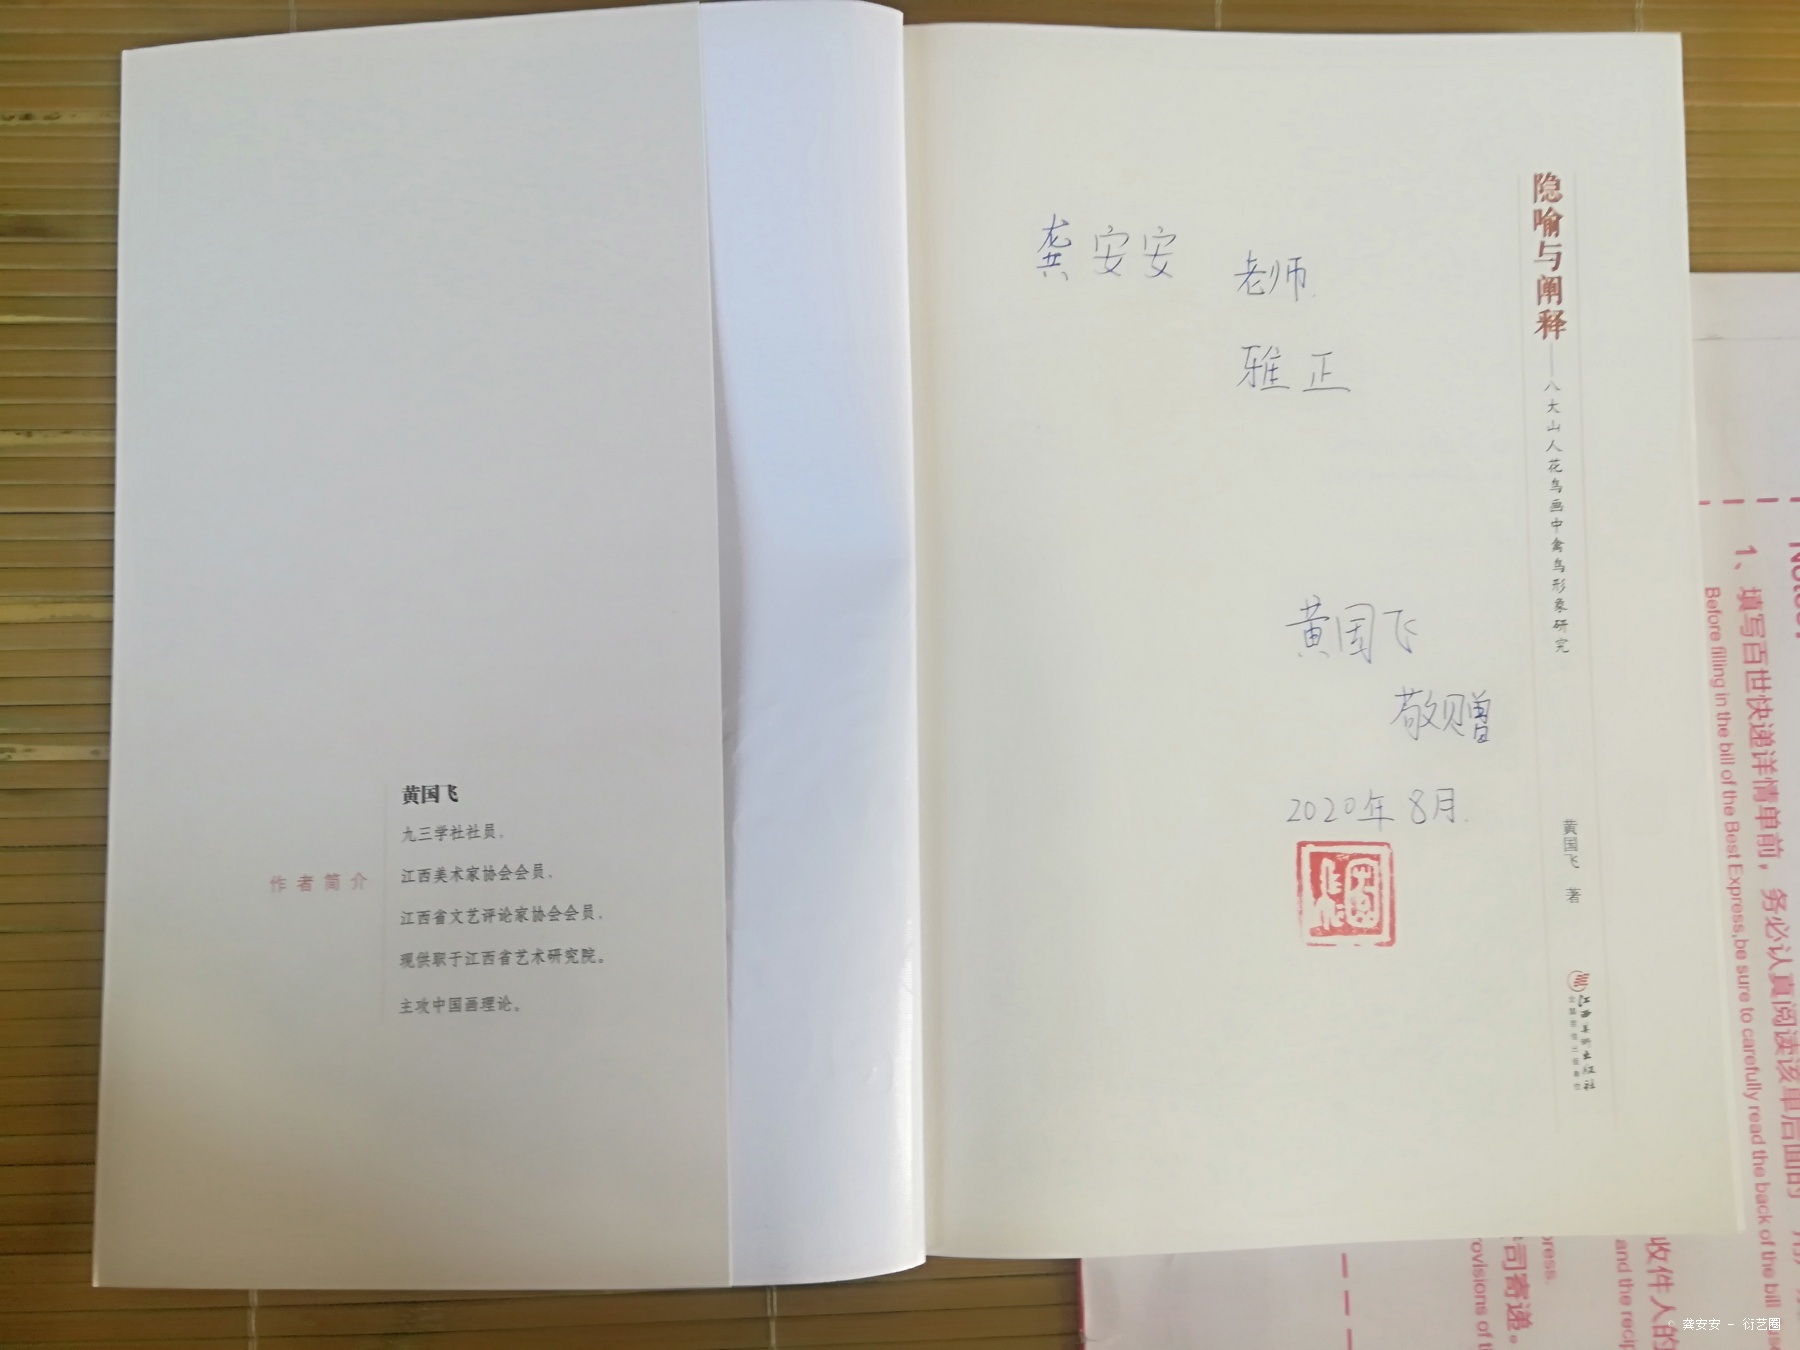 江西省艺术研究院黄国飞老师送我的研究著作，非常值得一读，涨知识